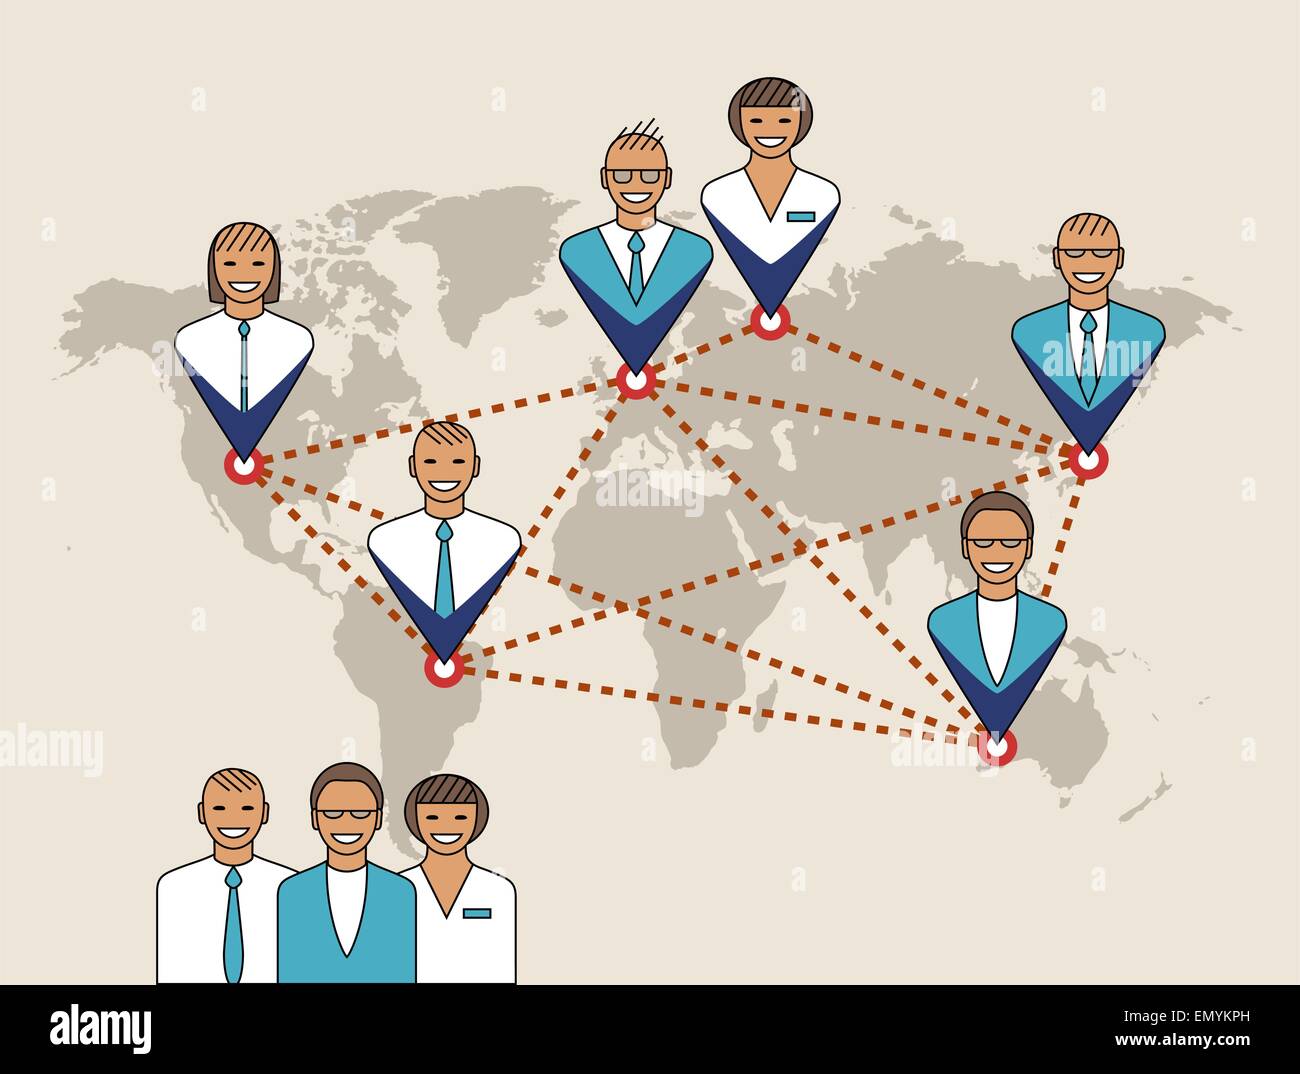 Il concetto di business. Illustrazione della gestione, servizio remoto e il lavoro di squadra. La mappa immagine è derivato da materiali delle Nazioni Unite Illustrazione Vettoriale